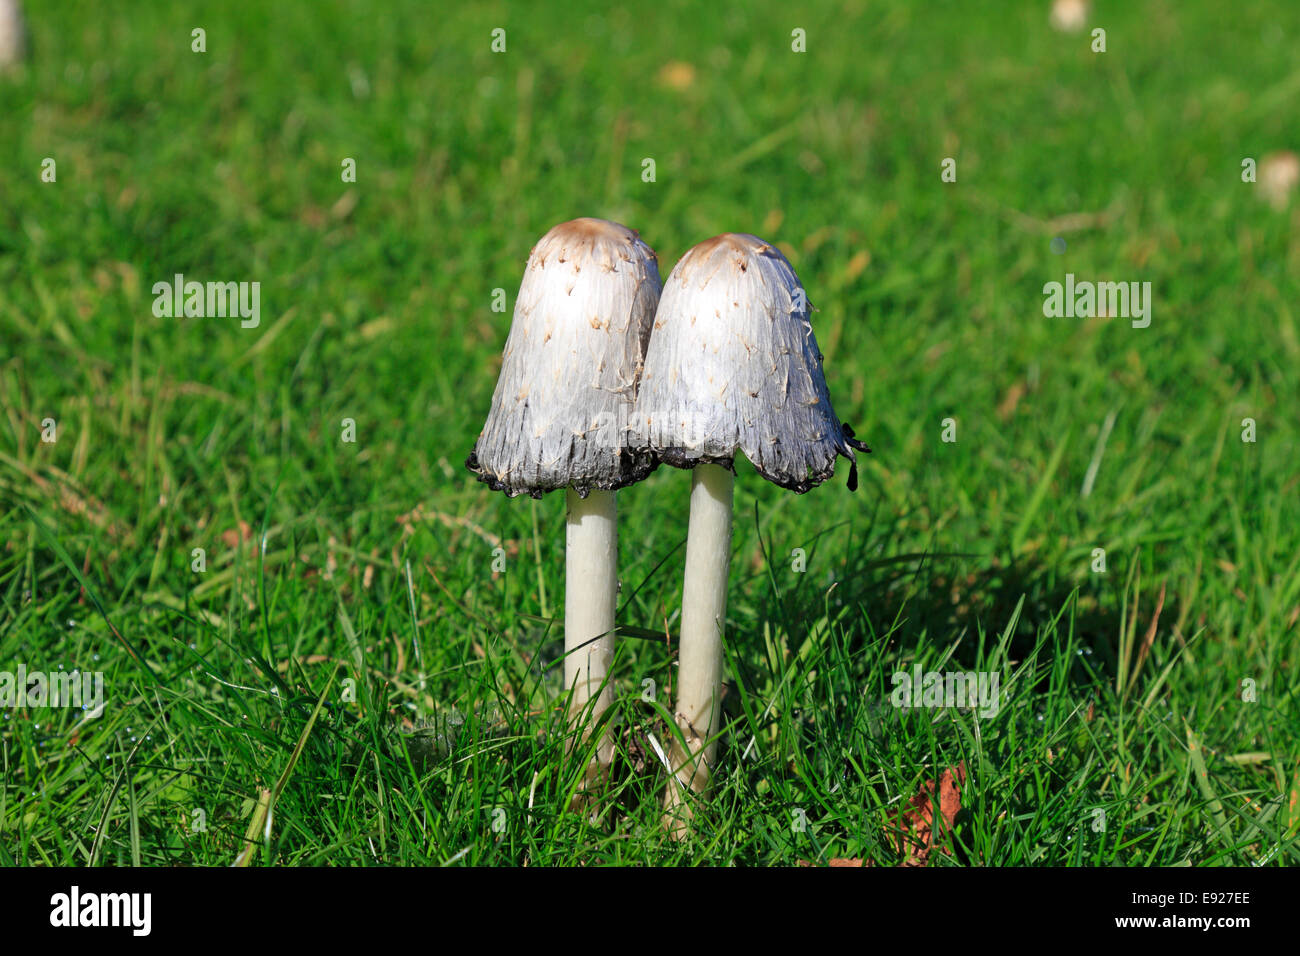 Shaggy Ink Caps, Coprinus comatus, Stainborough Parkland, Barnsley, South Yorkshire ,England, UK. Stock Photo